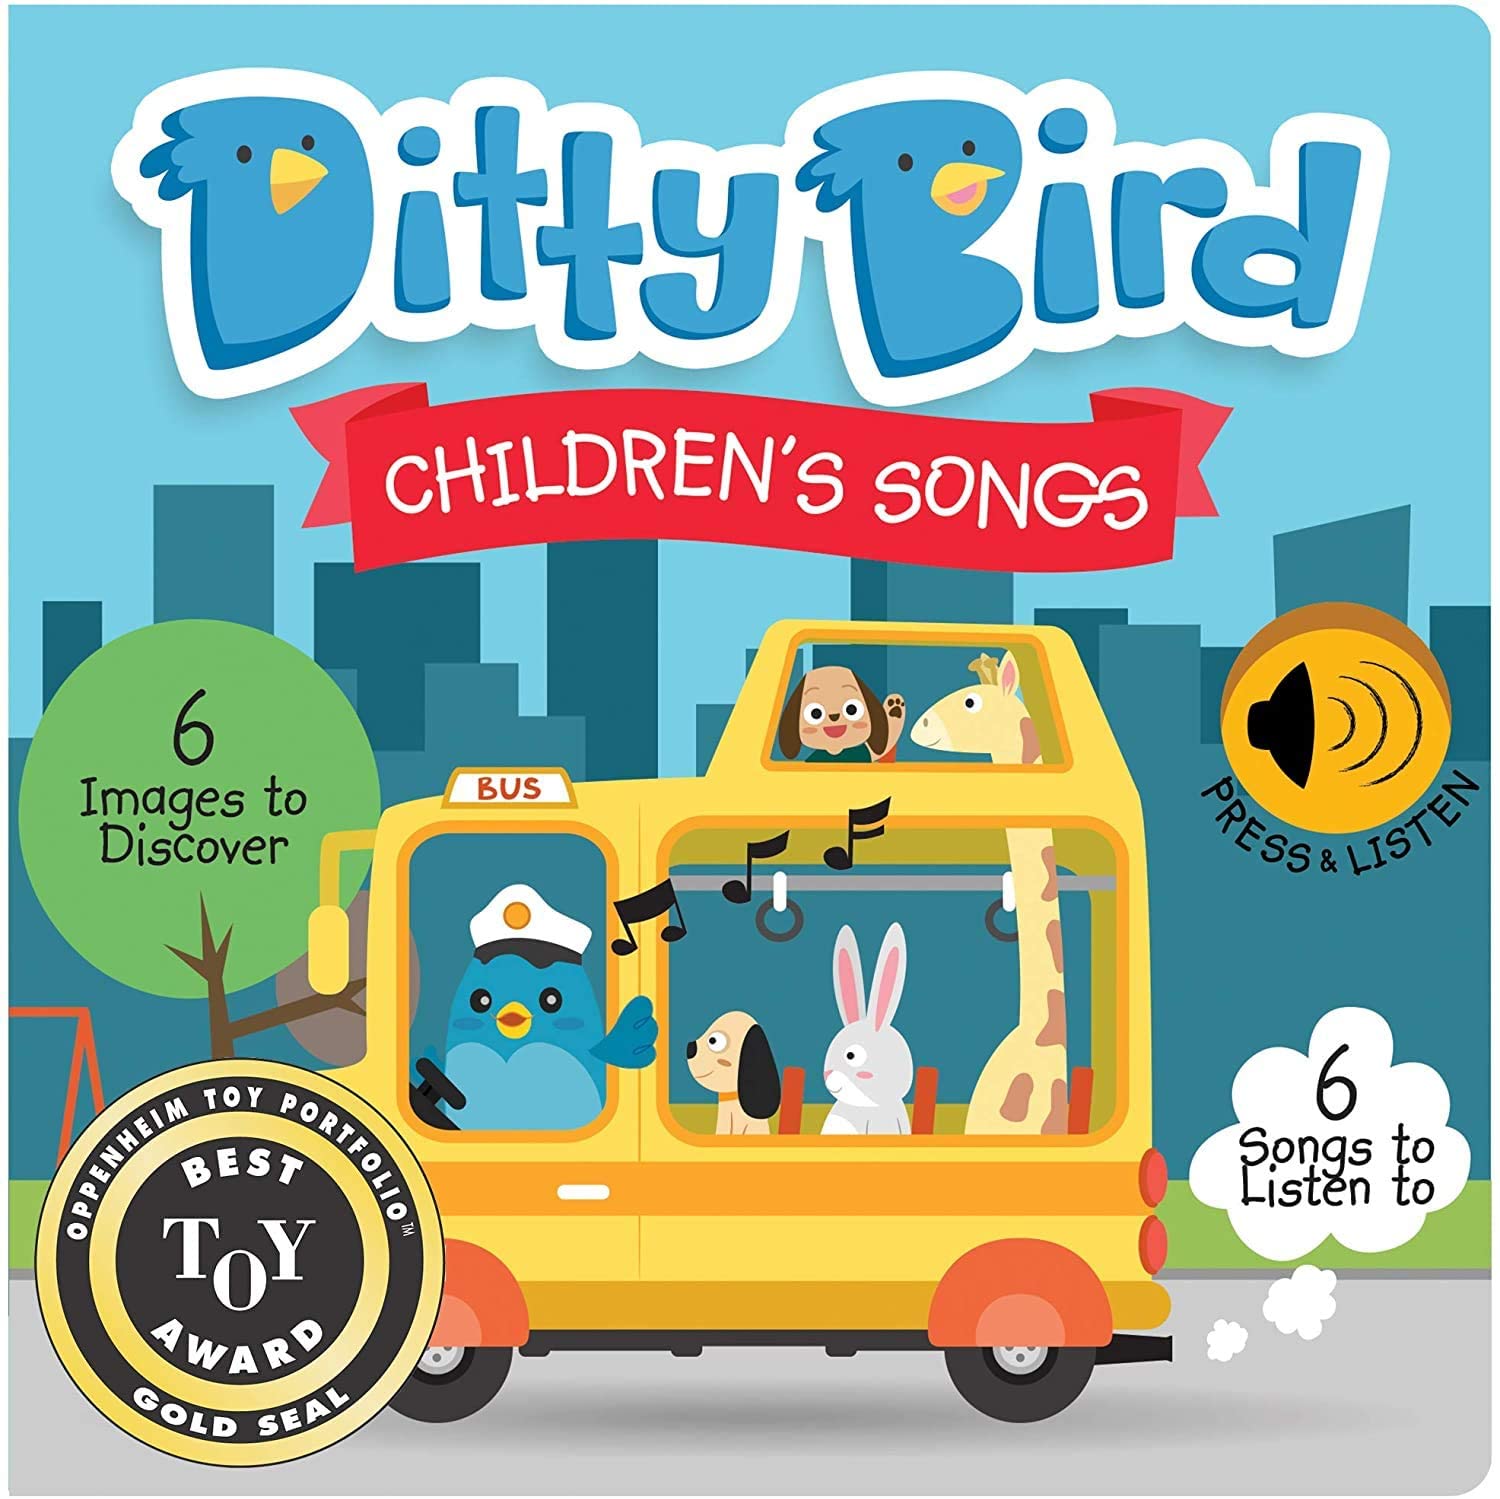 Ditty Bird Children's Songs Music Books